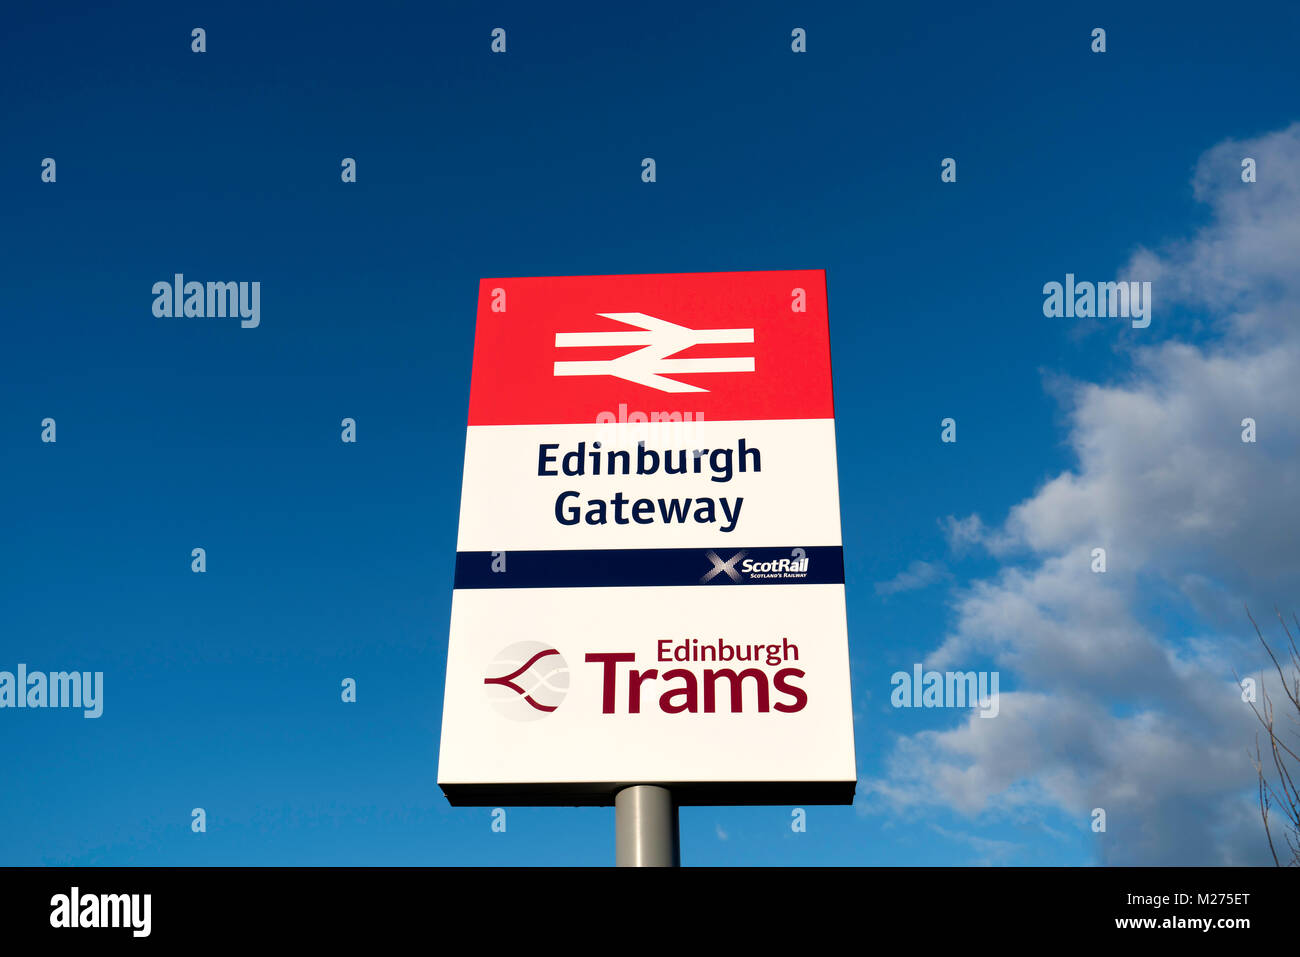 Ansicht Zeichen an moderne Edinburgh Gateway Eisenbahn und Straßenbahn, Scotrail Bahnreisende mit Edinburgh Tram Link in Edinburgh, Sco verbindet Stockfoto